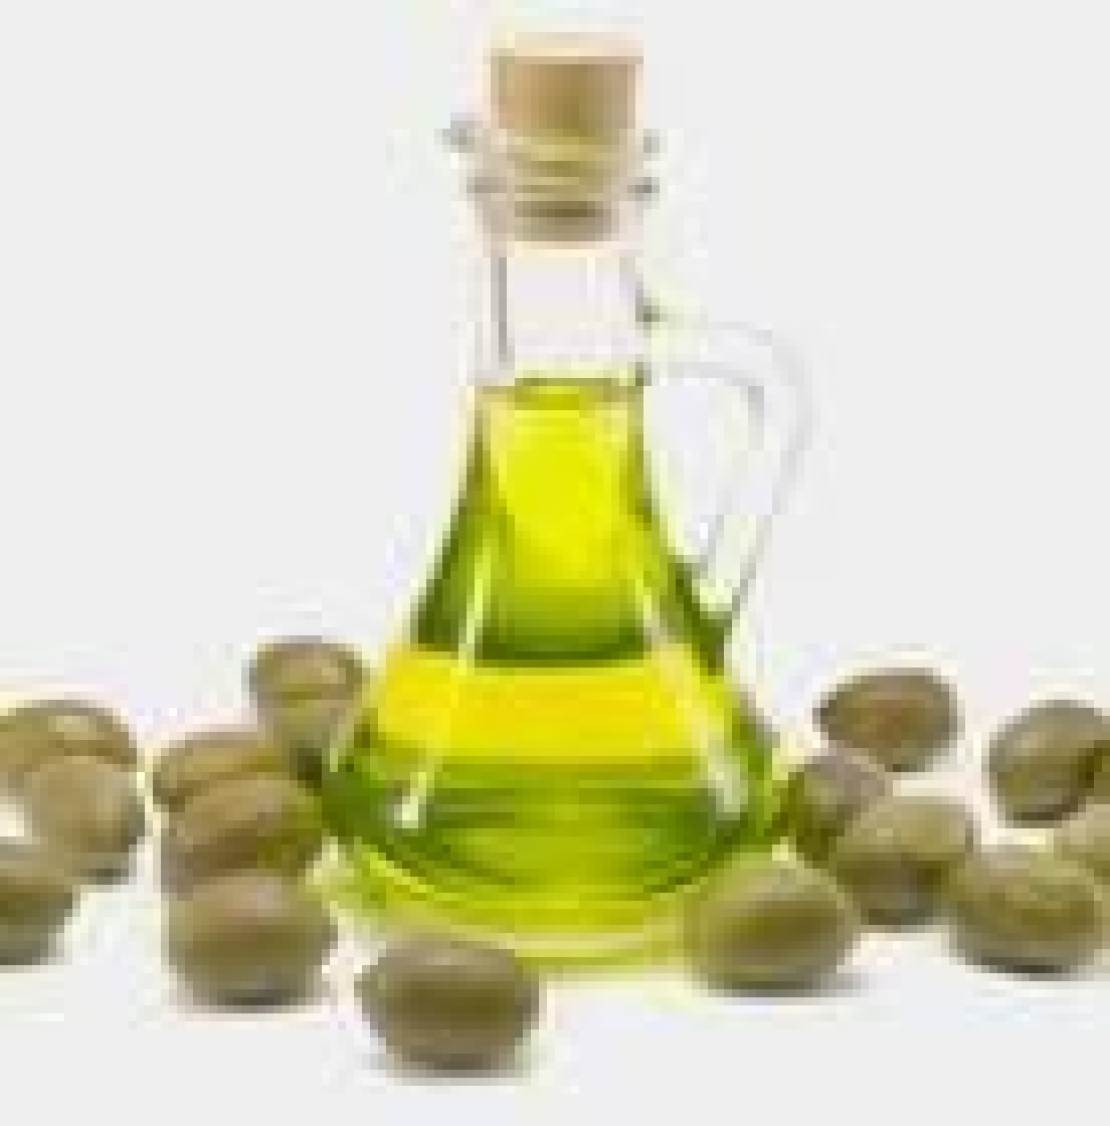 Mio olio extra vergine d'oliva, ma quanto mi costi?